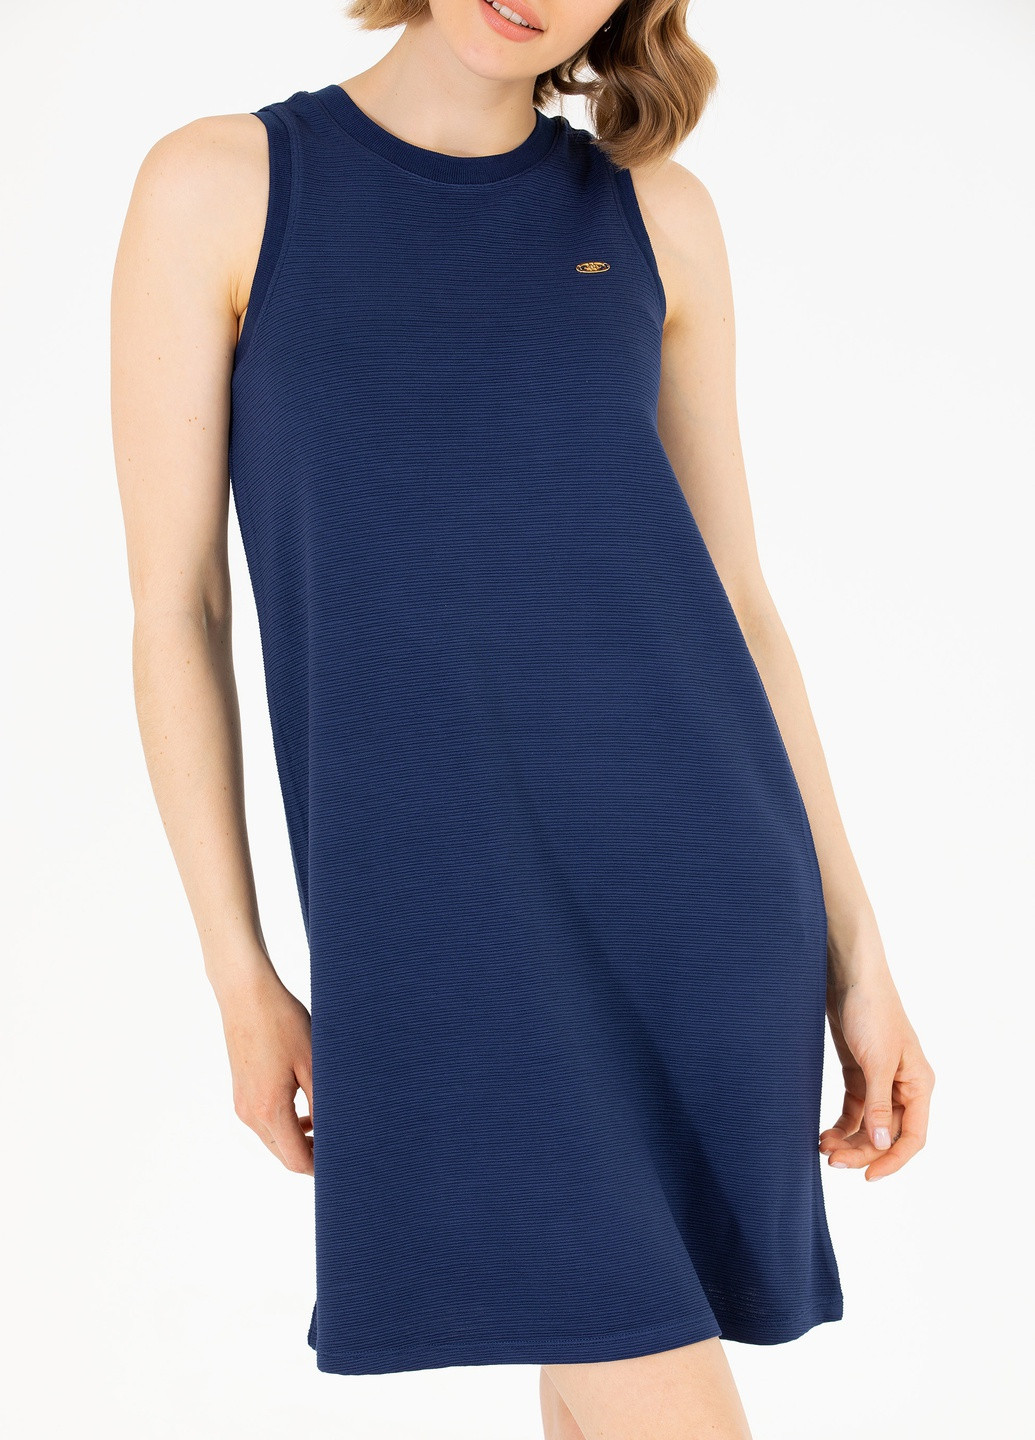 Темно-синее платье женское U.S. Polo Assn.